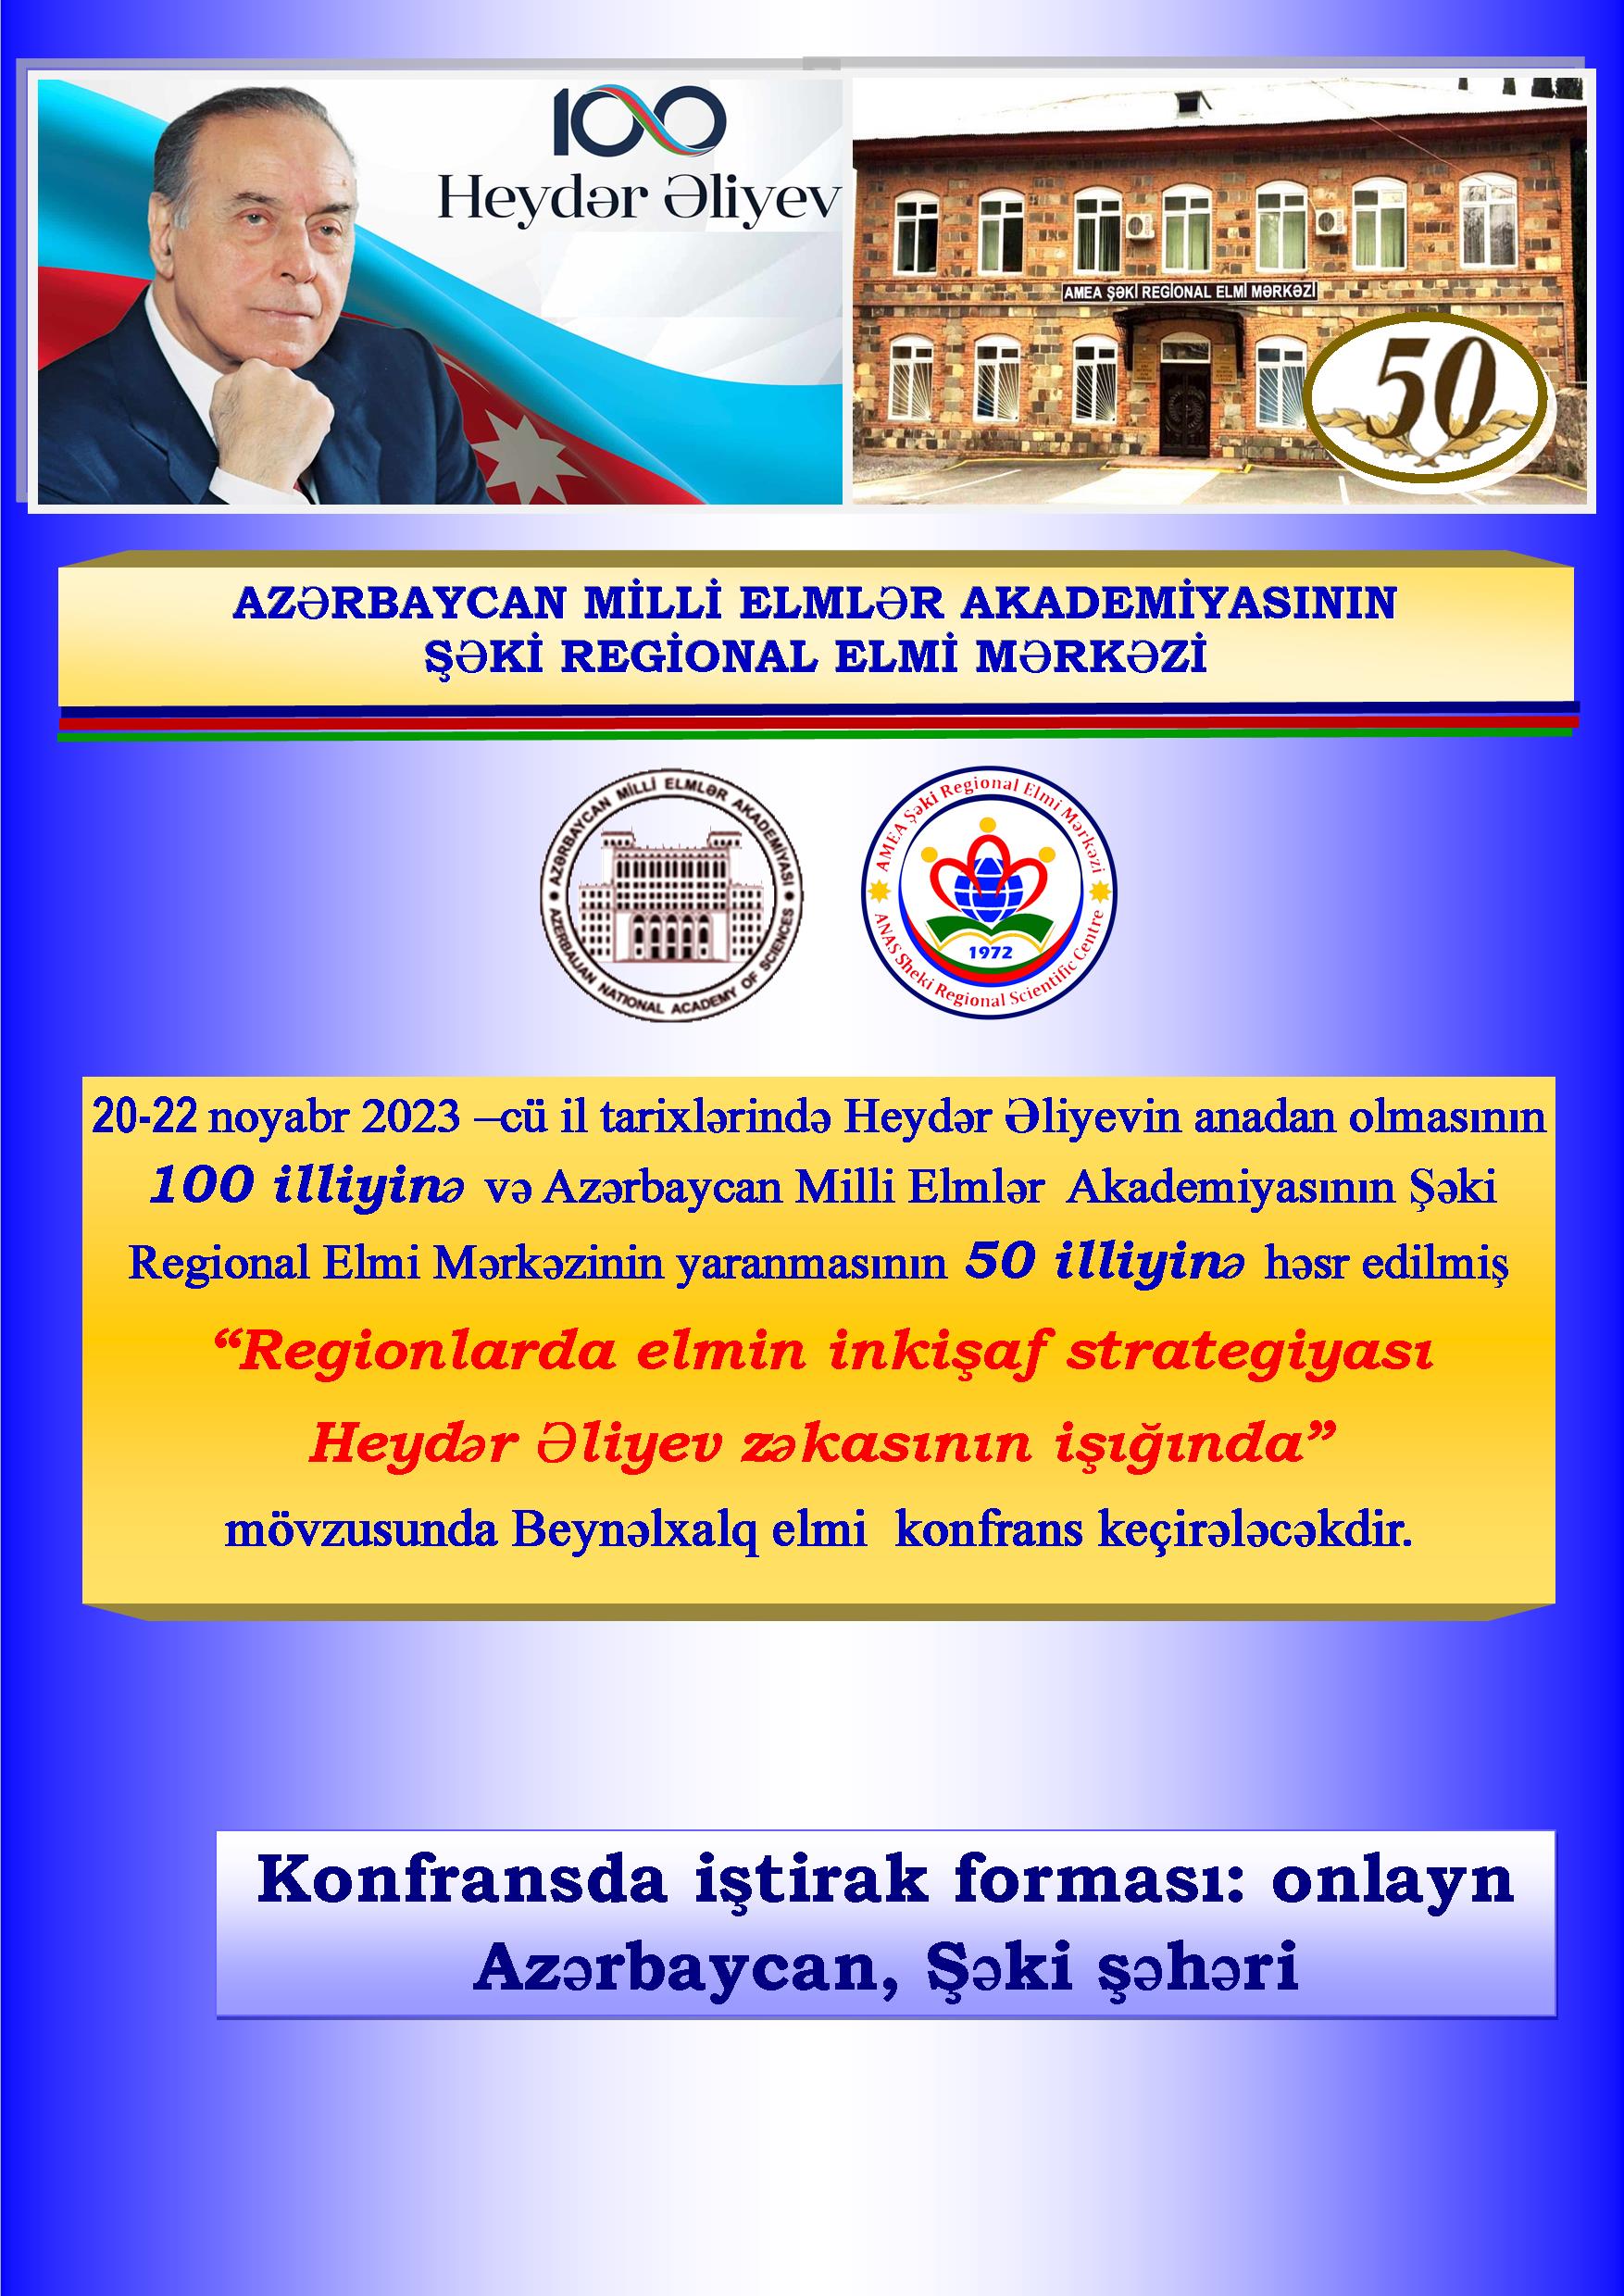 SHAKI REGIONAL SCIENTIFIC CENTER OF AZERBAIJAN NATIONAL ACADEMY OF SCIENCES